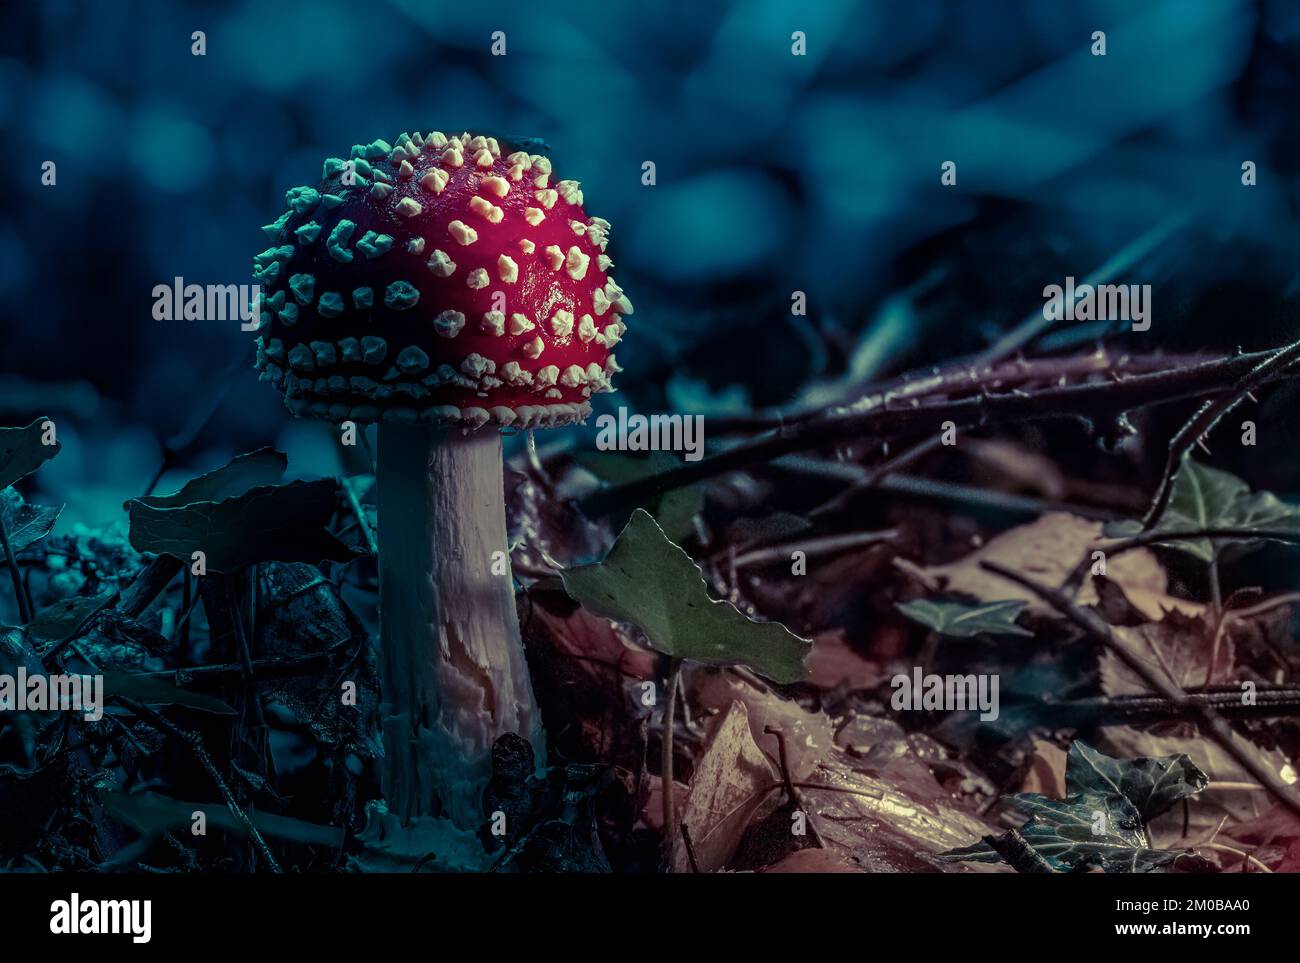 Fairytale mushroom Stock Photo